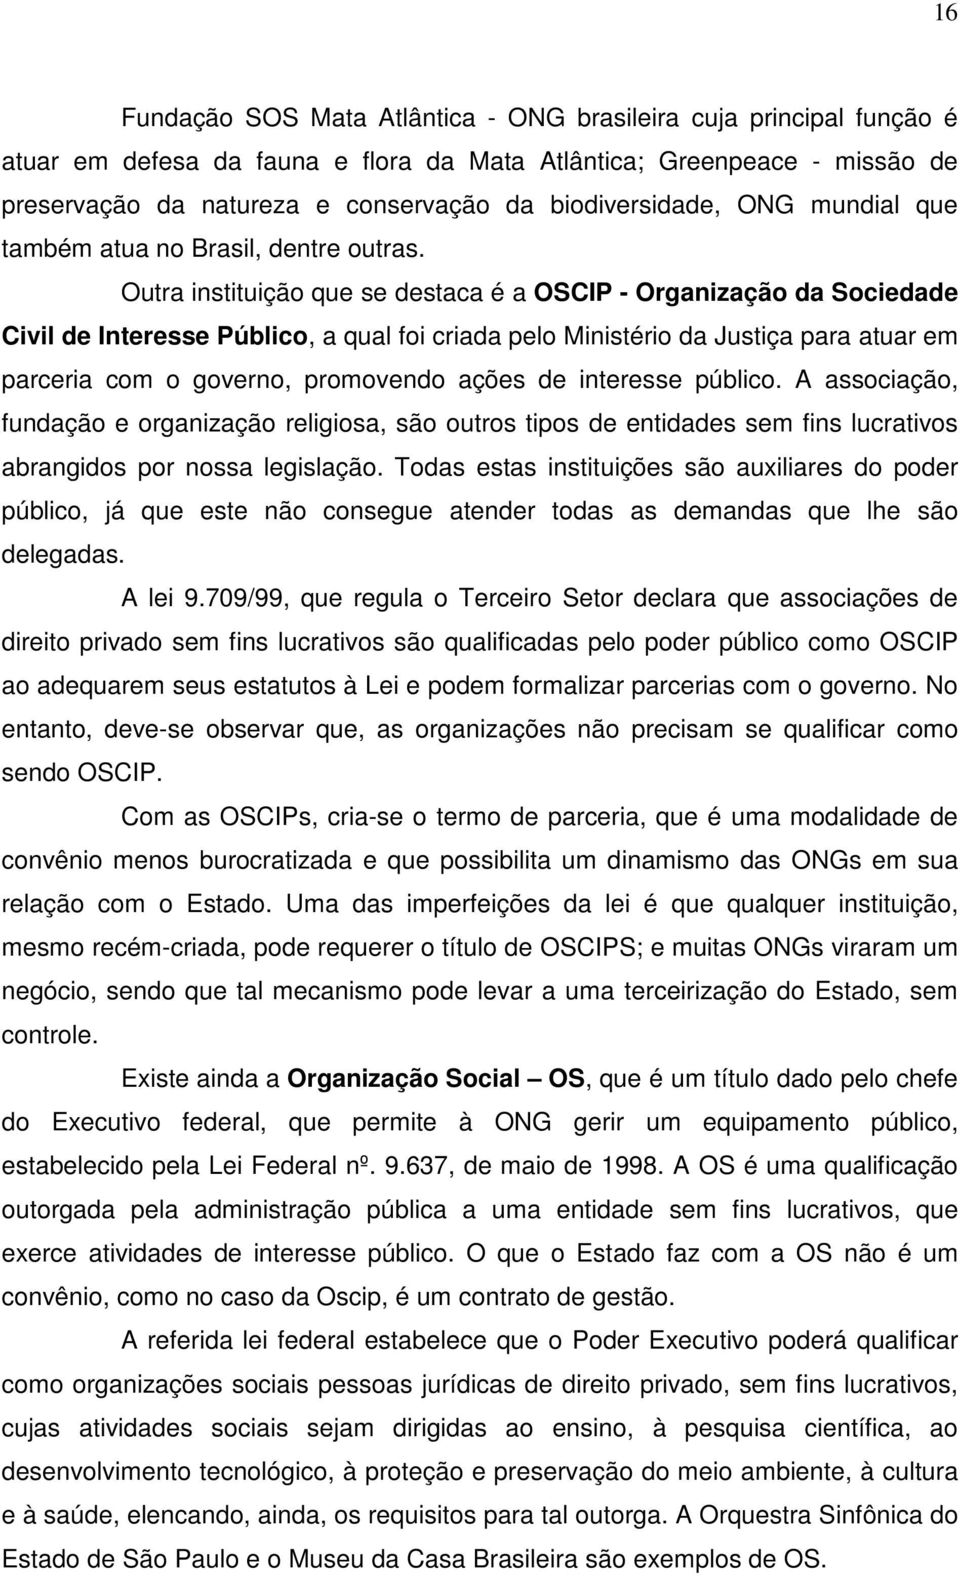 Outra instituição que se destaca é a OSCIP - Organização da Sociedade Civil de Interesse Público, a qual foi criada pelo Ministério da Justiça para atuar em parceria com o governo, promovendo ações